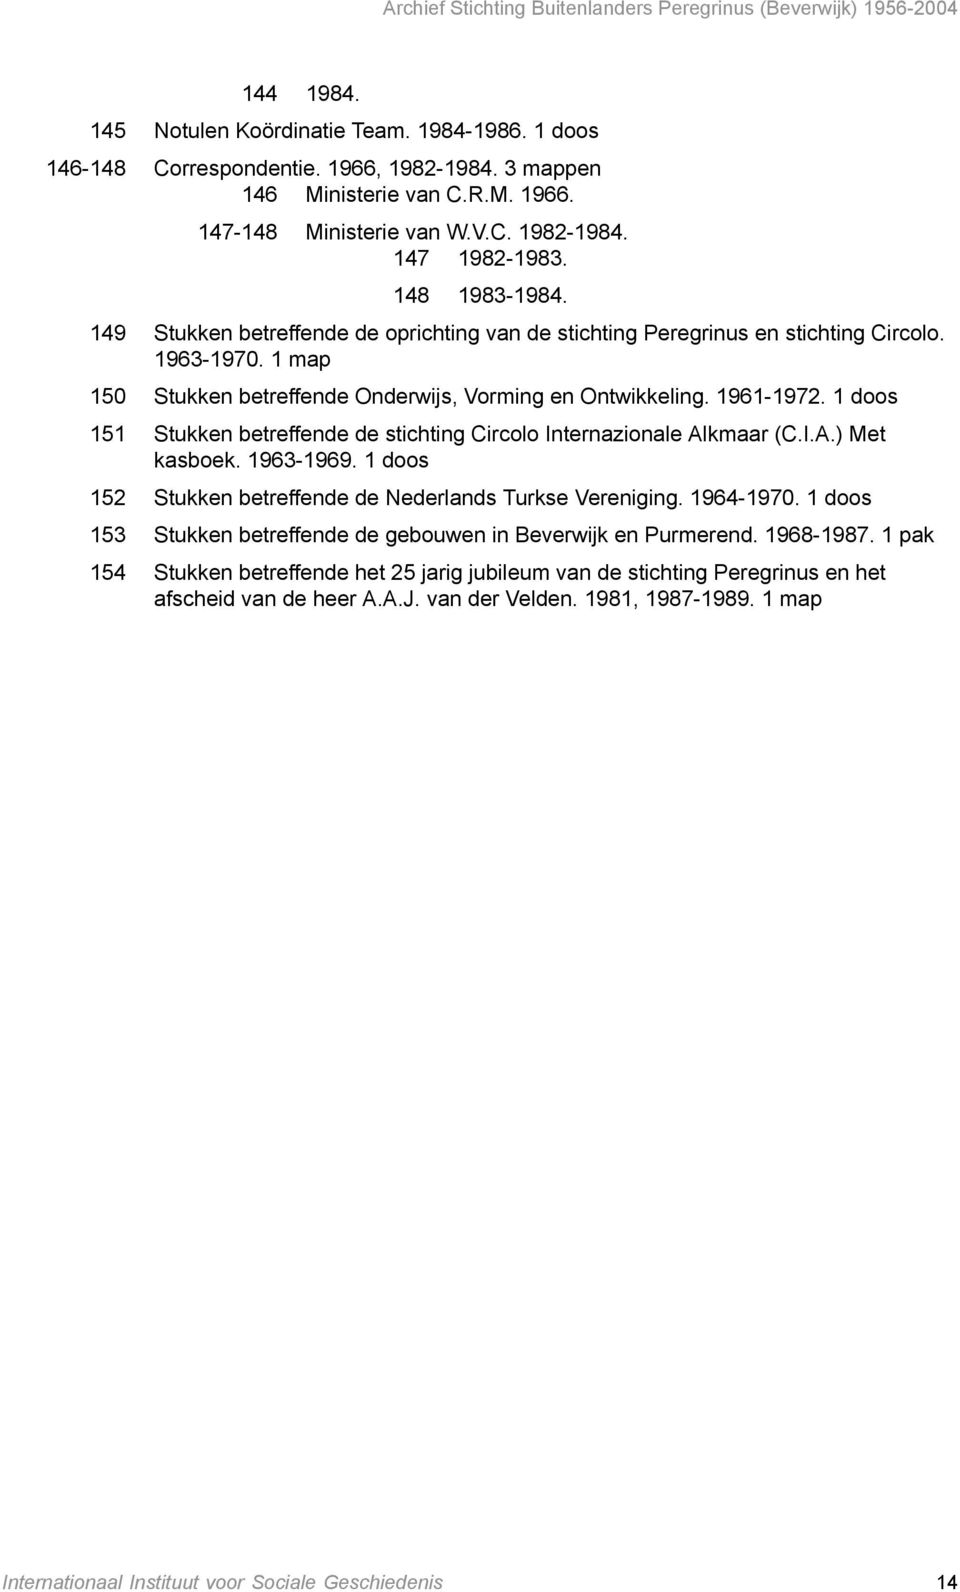 151 Stukken betreffende de stichting Circolo Internazionale Alkmaar (C.I.A.) Met kasboek. 1963-1969. 152 Stukken betreffende de Nederlands Turkse Vereniging. 1964-1970.